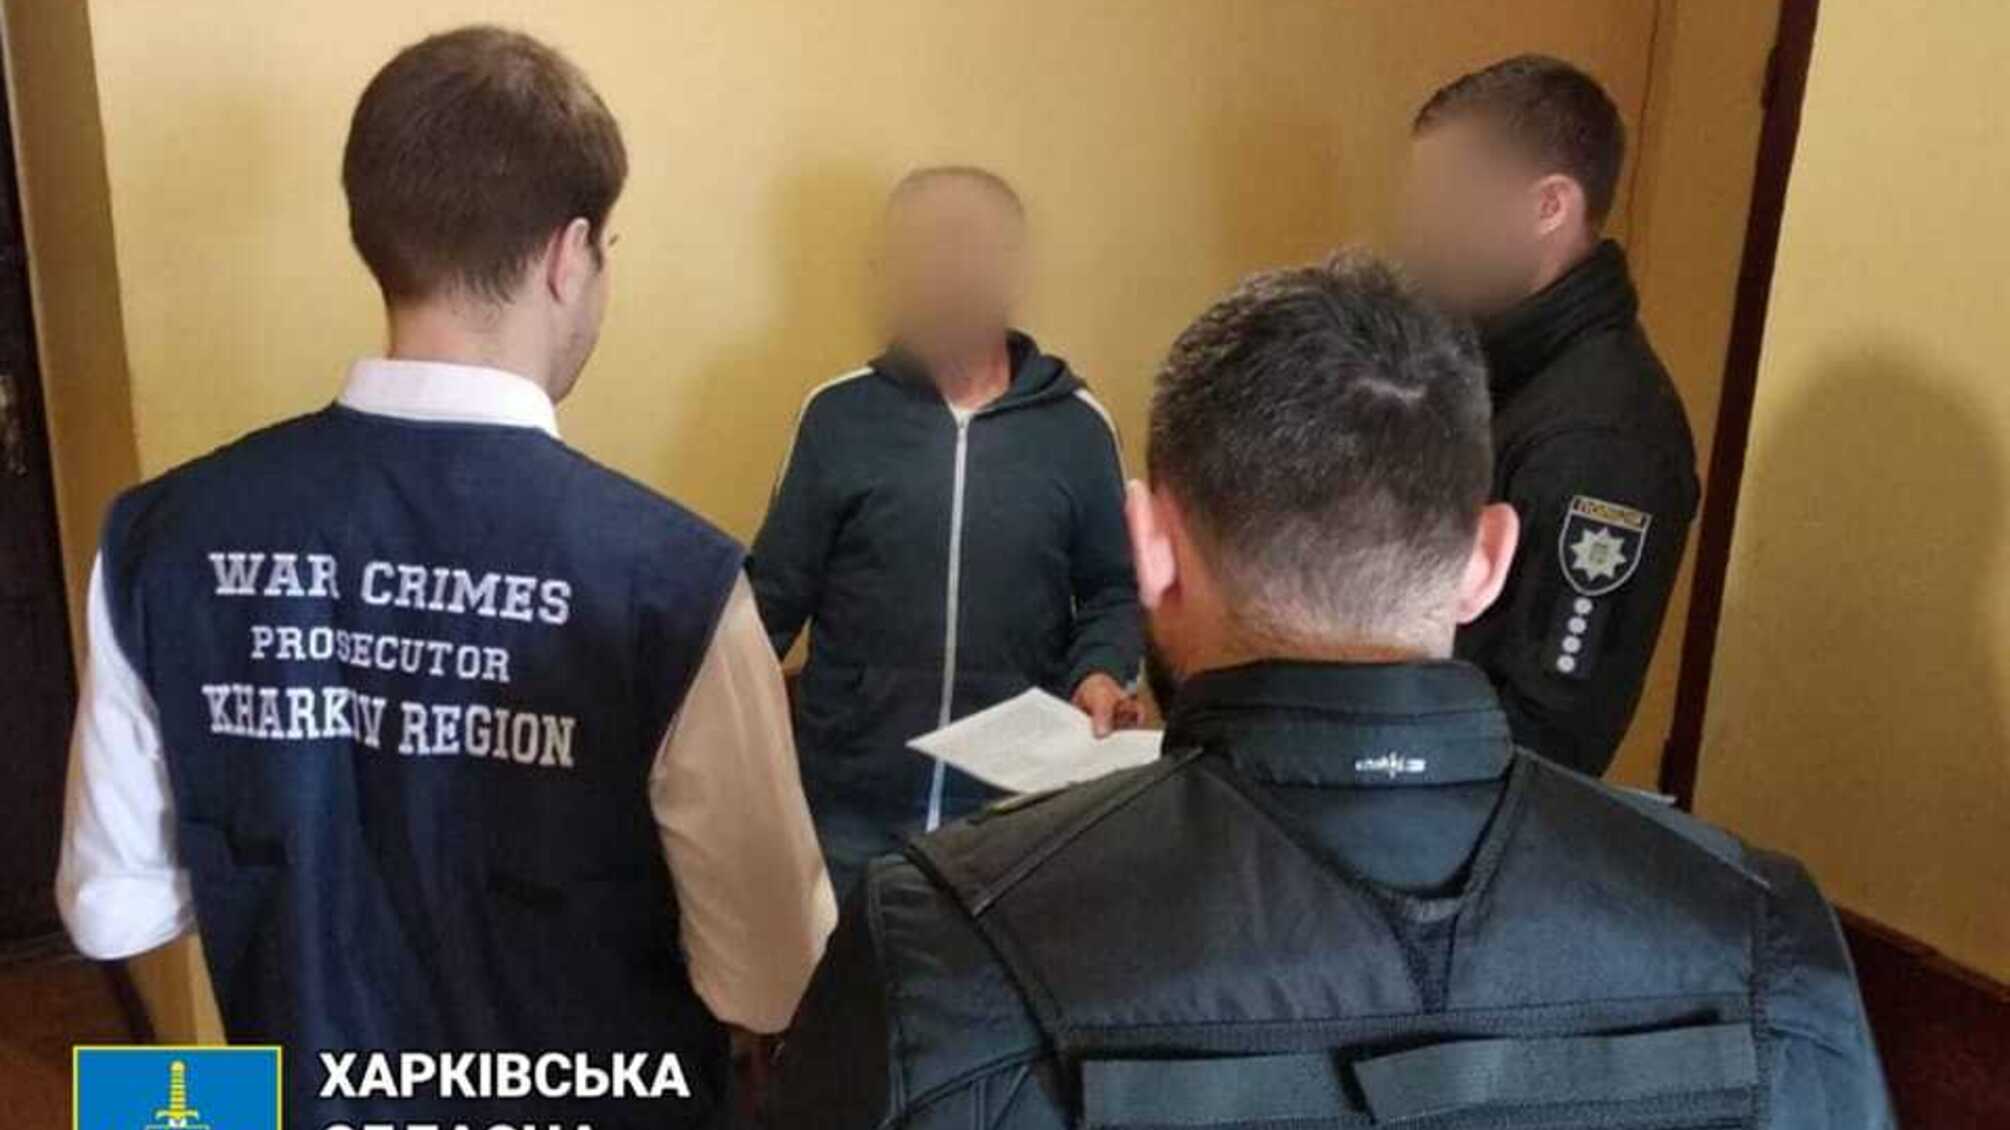 Кормил оккупантов в Харьковской области: прокуратура вручила подозрение 60-летнему мужчине – детали